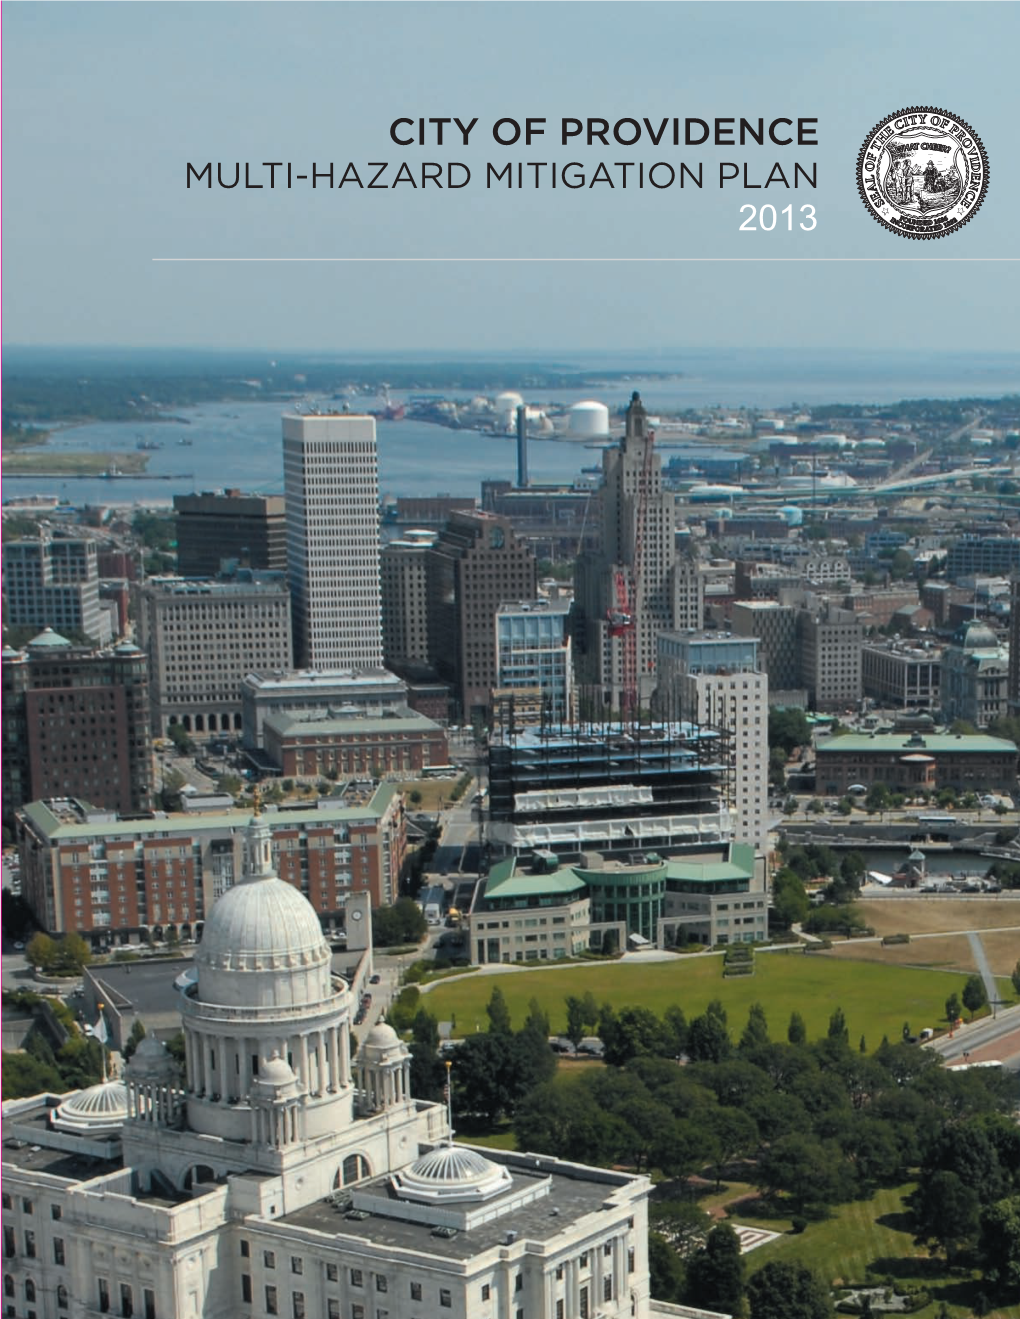 A Multi-Hazard Mitigation Plan